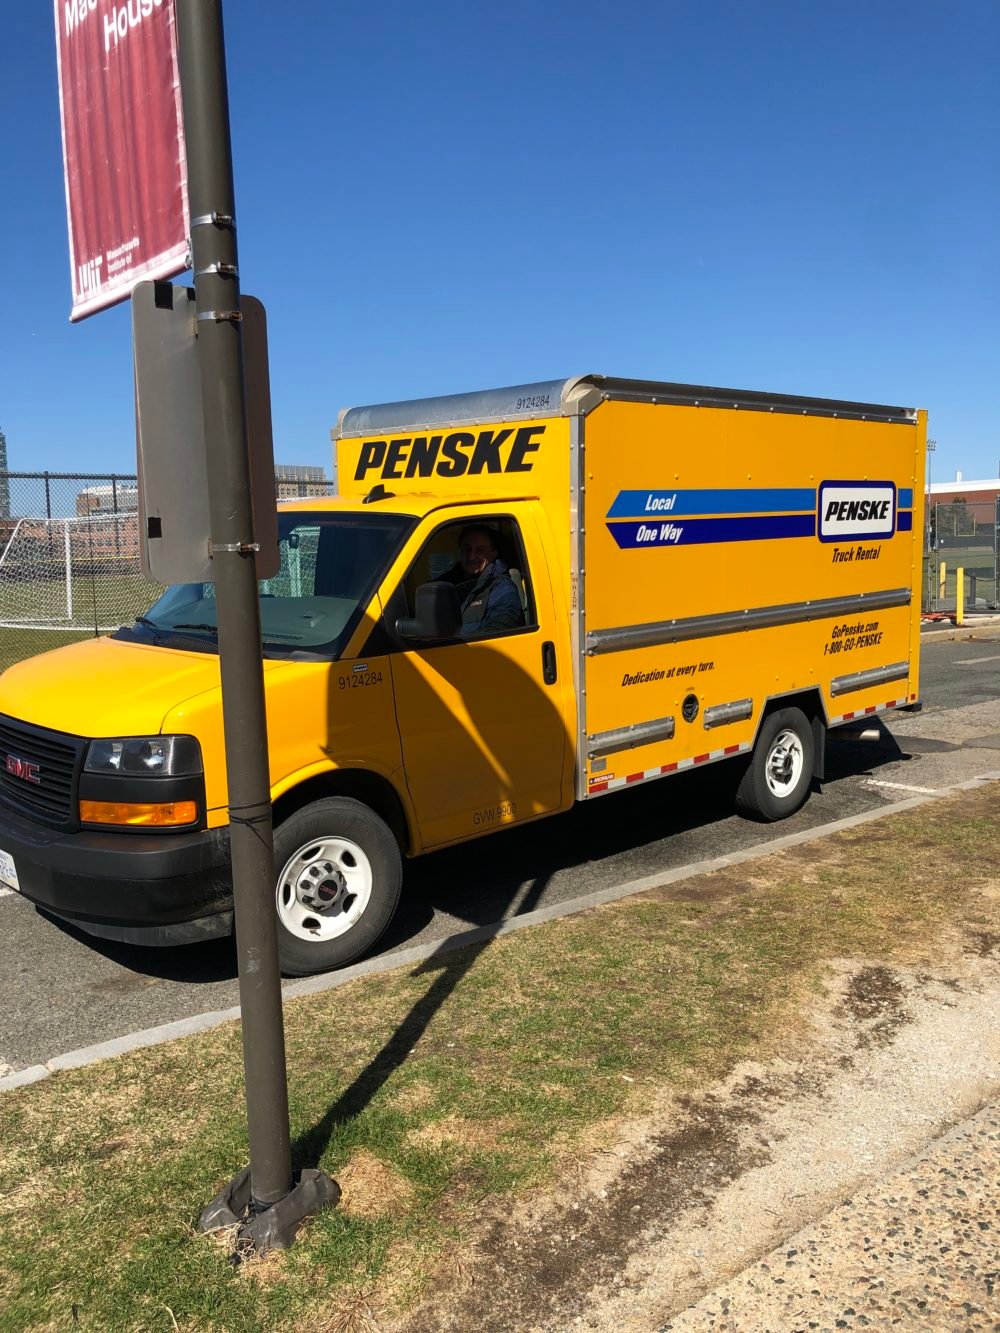 a yellow Penske truck